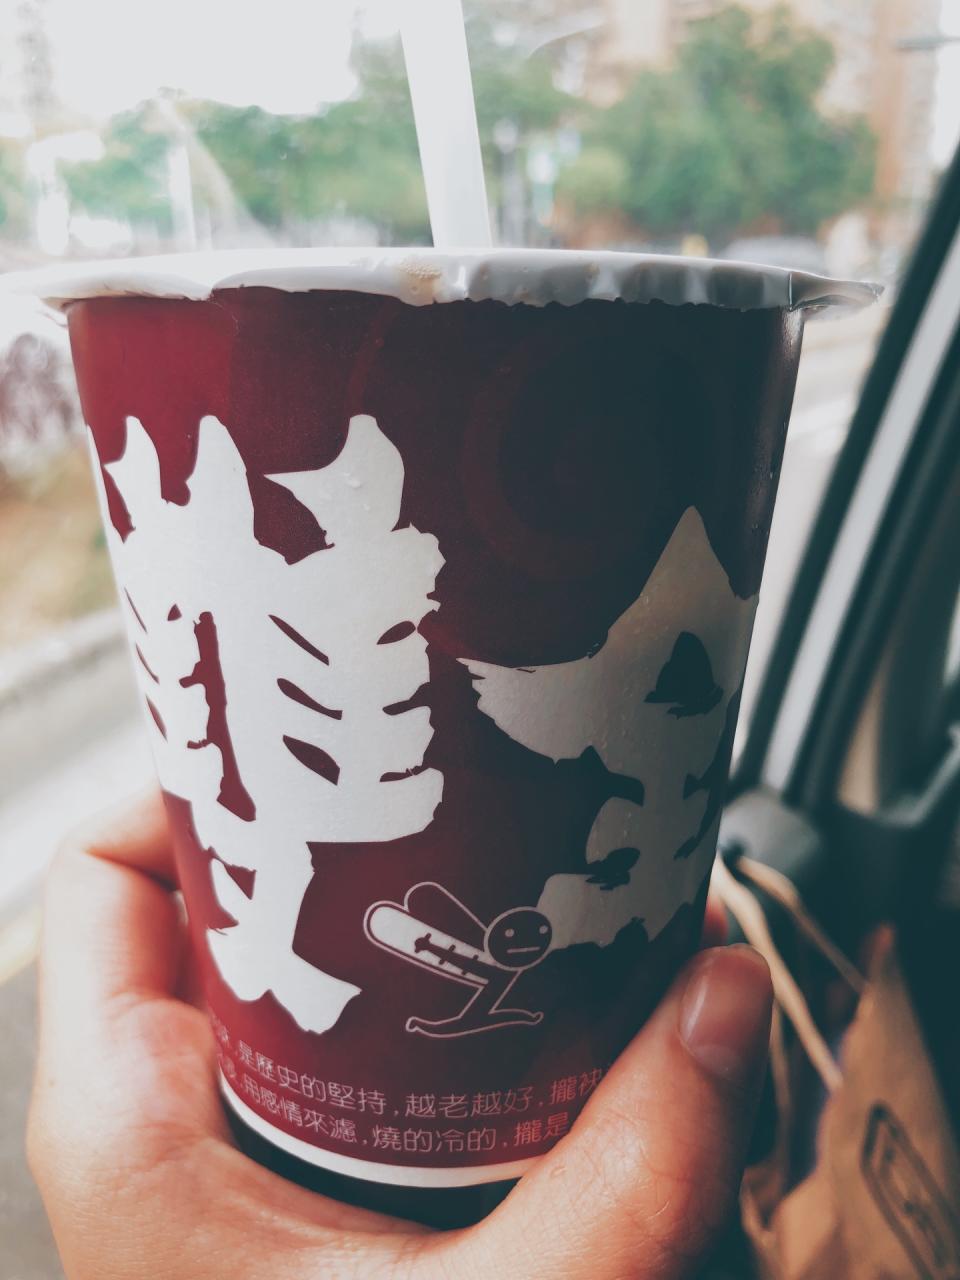 台南雙全紅茶超濃厚。(圖片來源/Yahoo奇摩旅遊編輯部)